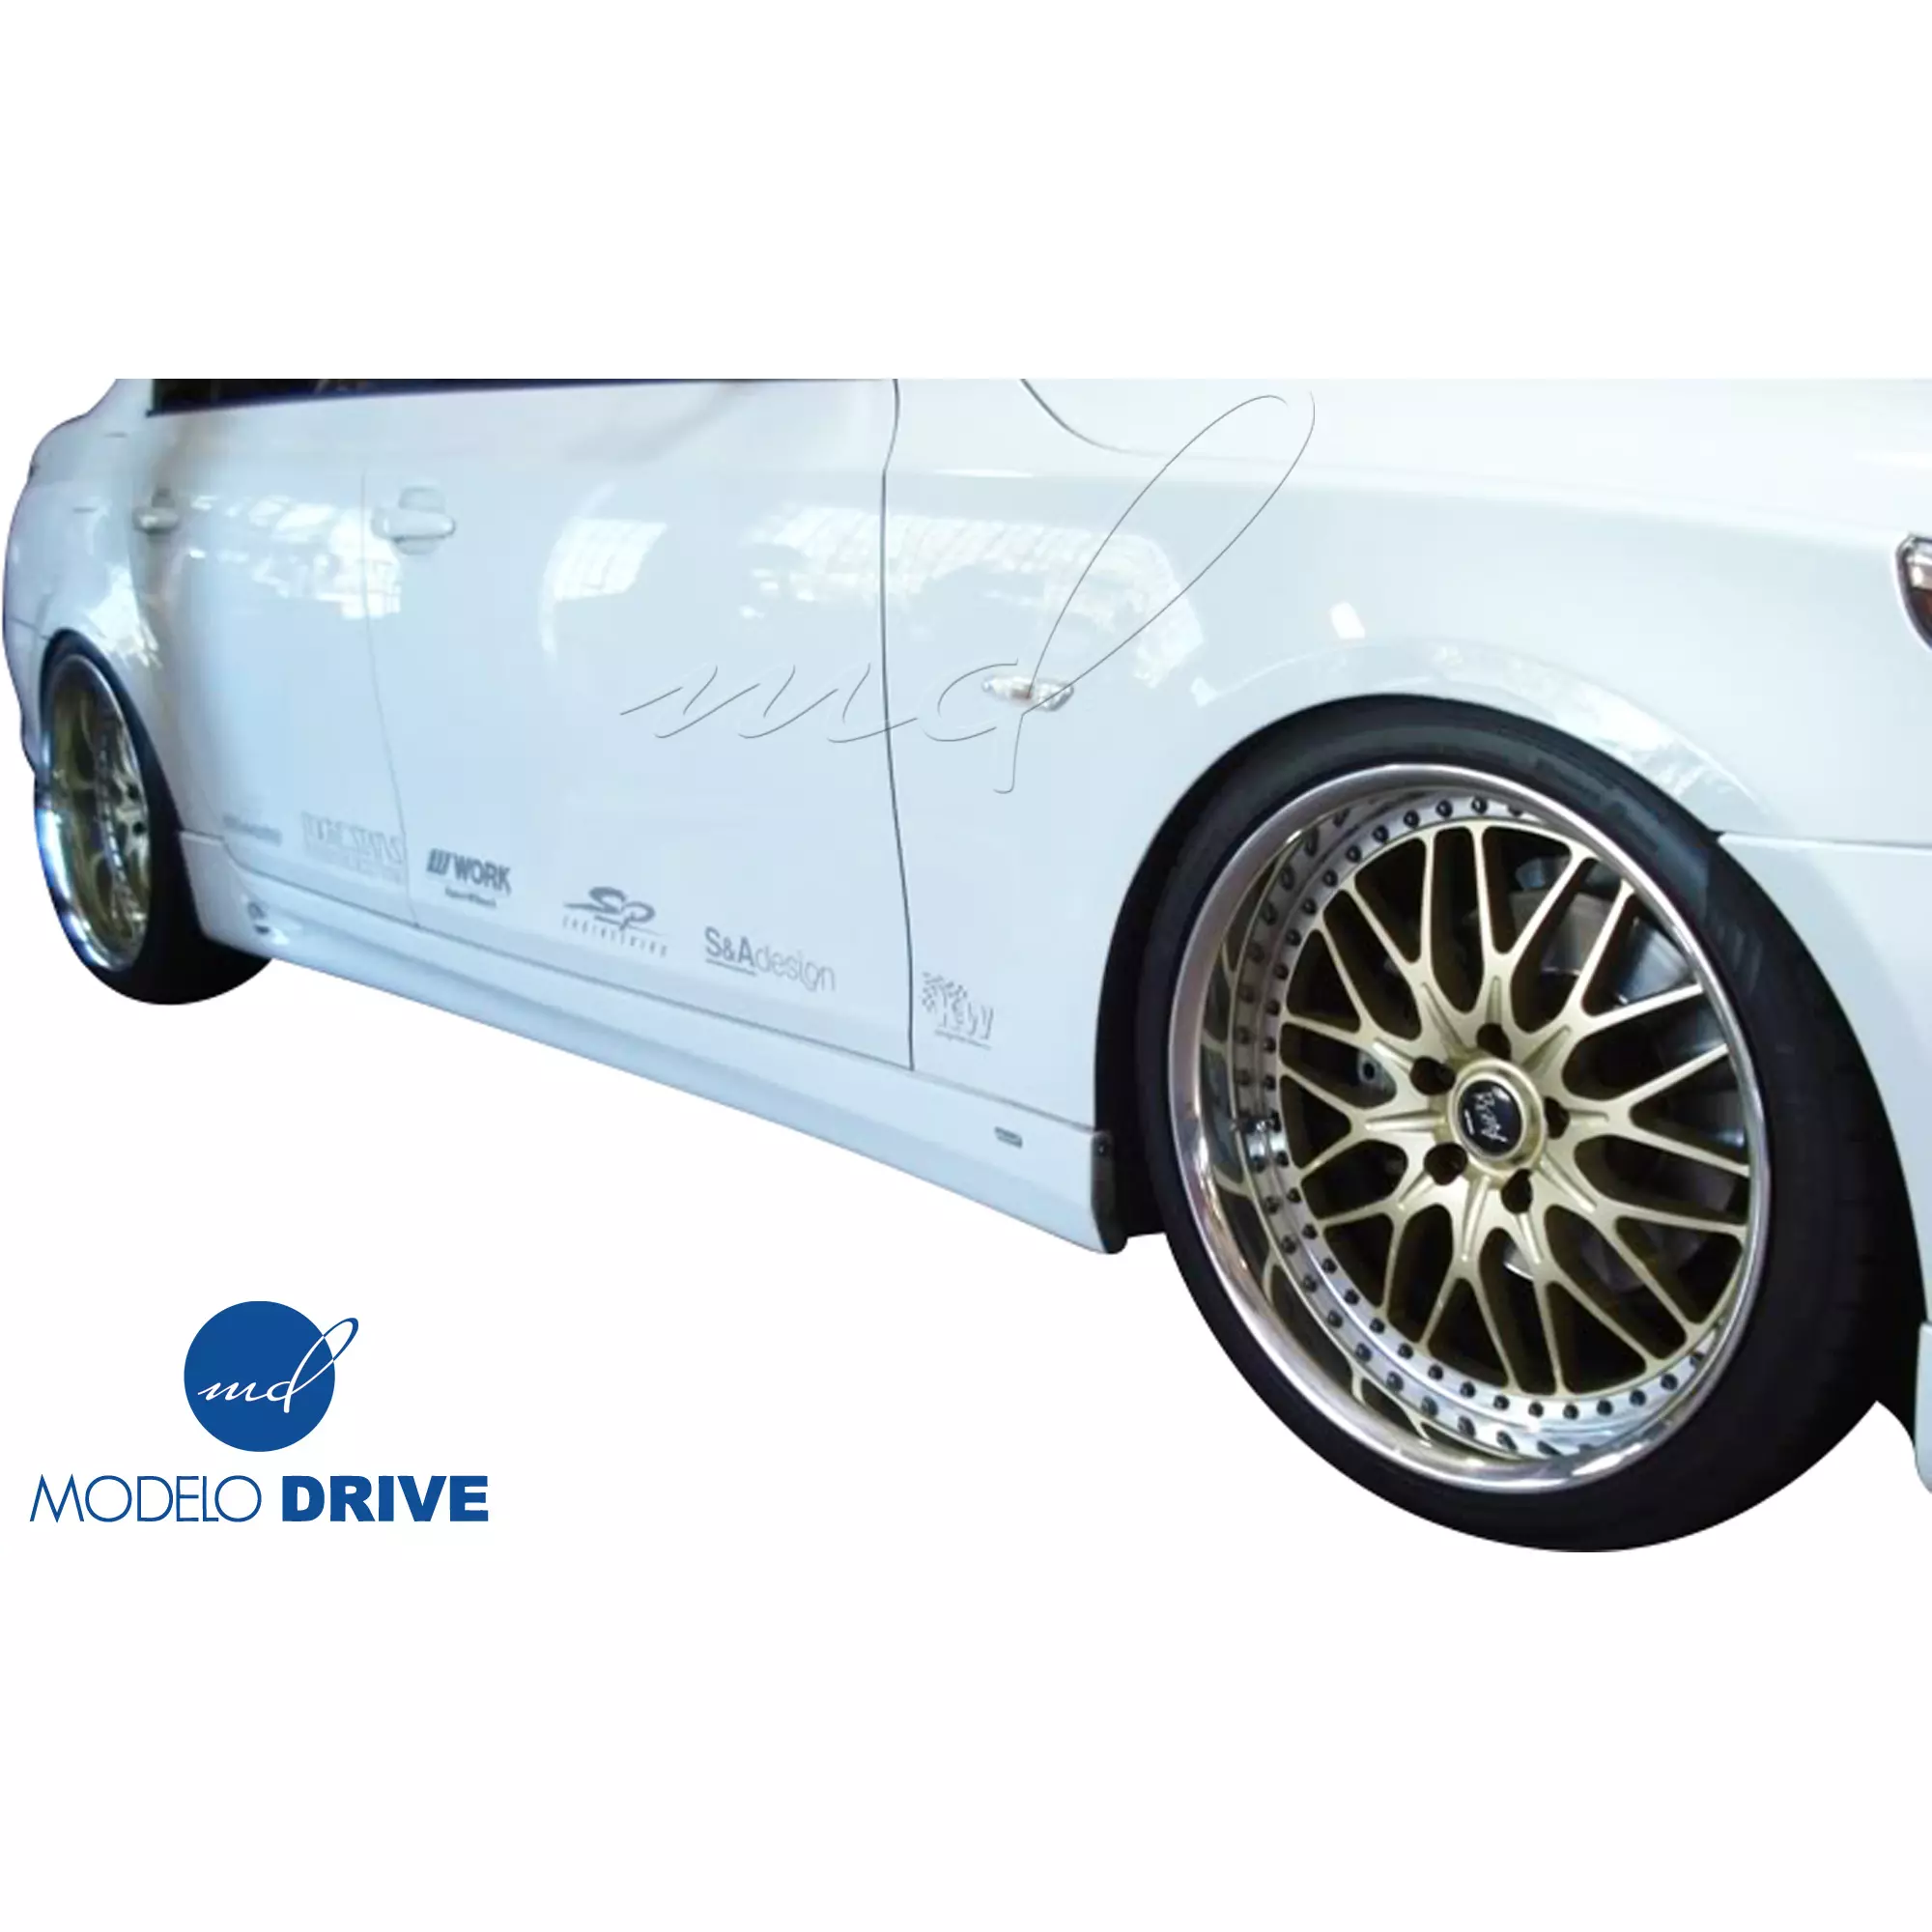 ModeloDrive FRP ASCH Body Kit 4pc > BMW 5-Series E60 2004-2010 > 4dr - Image 17